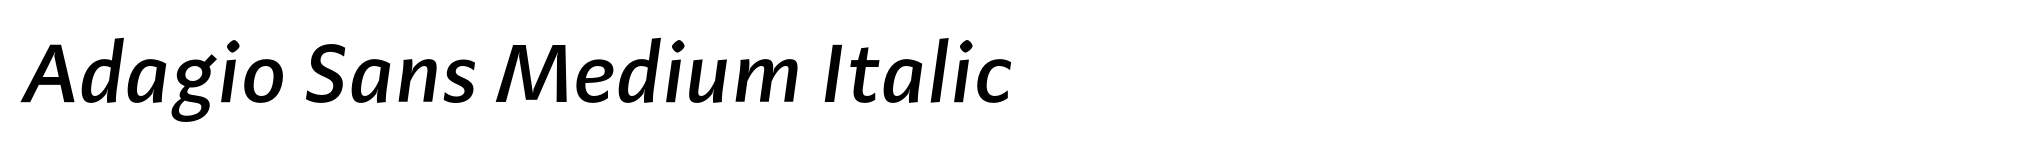 Adagio Sans Medium Italic image